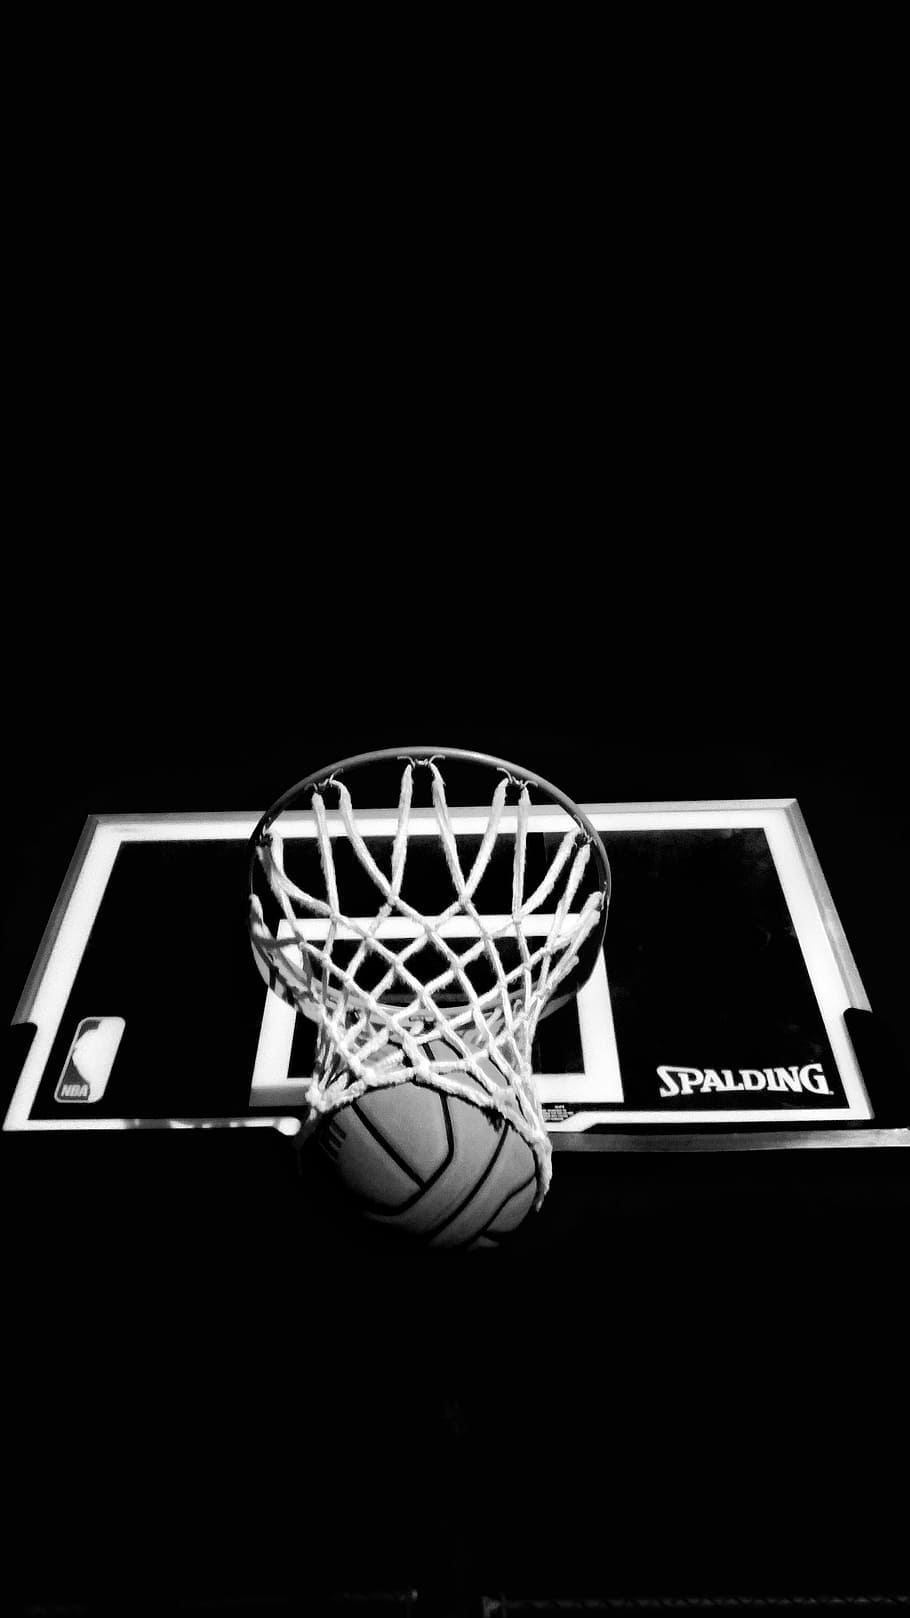 黒, 白, 飛び散るバスケットボールリングボード, 暗い, リング, ボード, バスケットボール, ボール, スポーツ, コピースペース